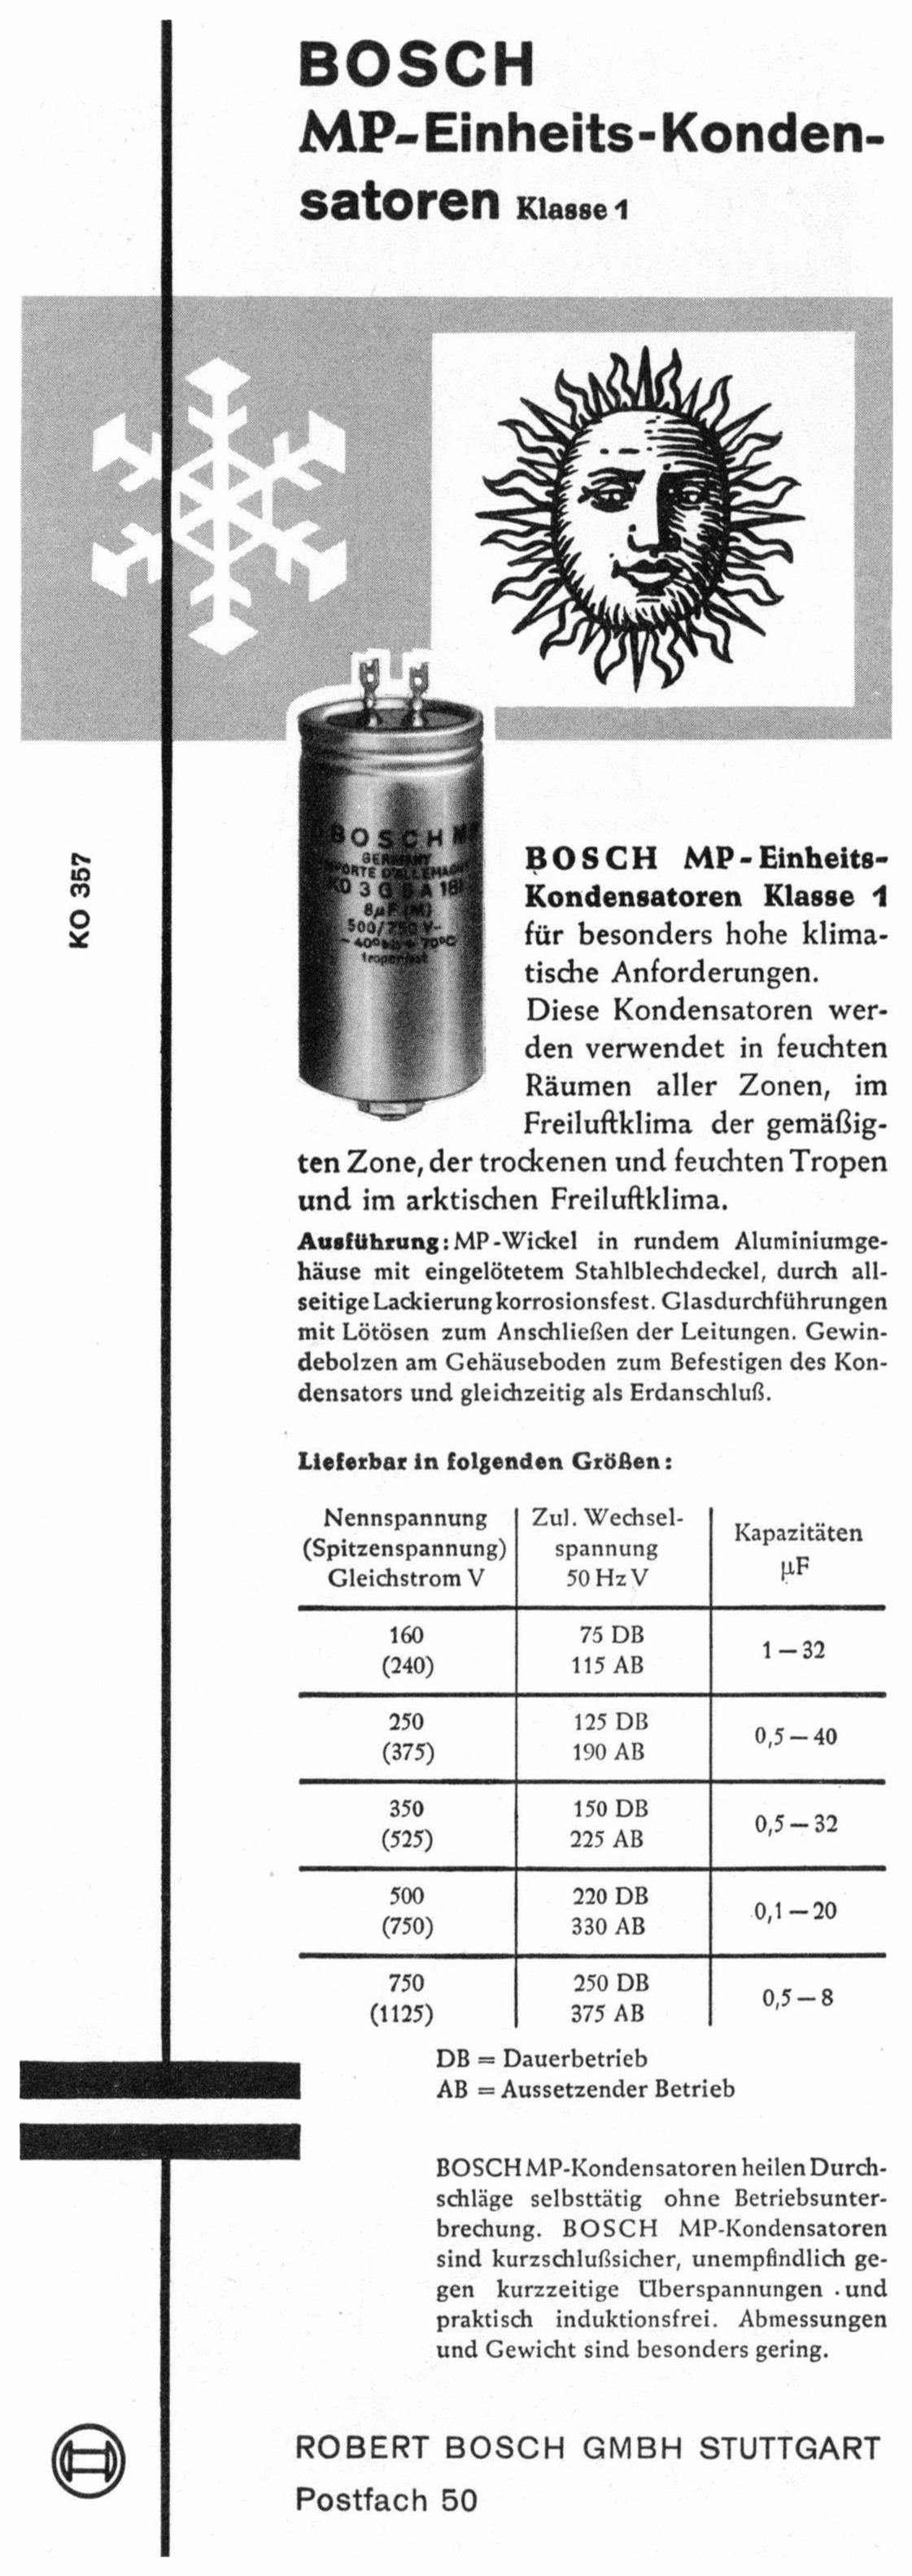 Bosch 1959 0.jpg